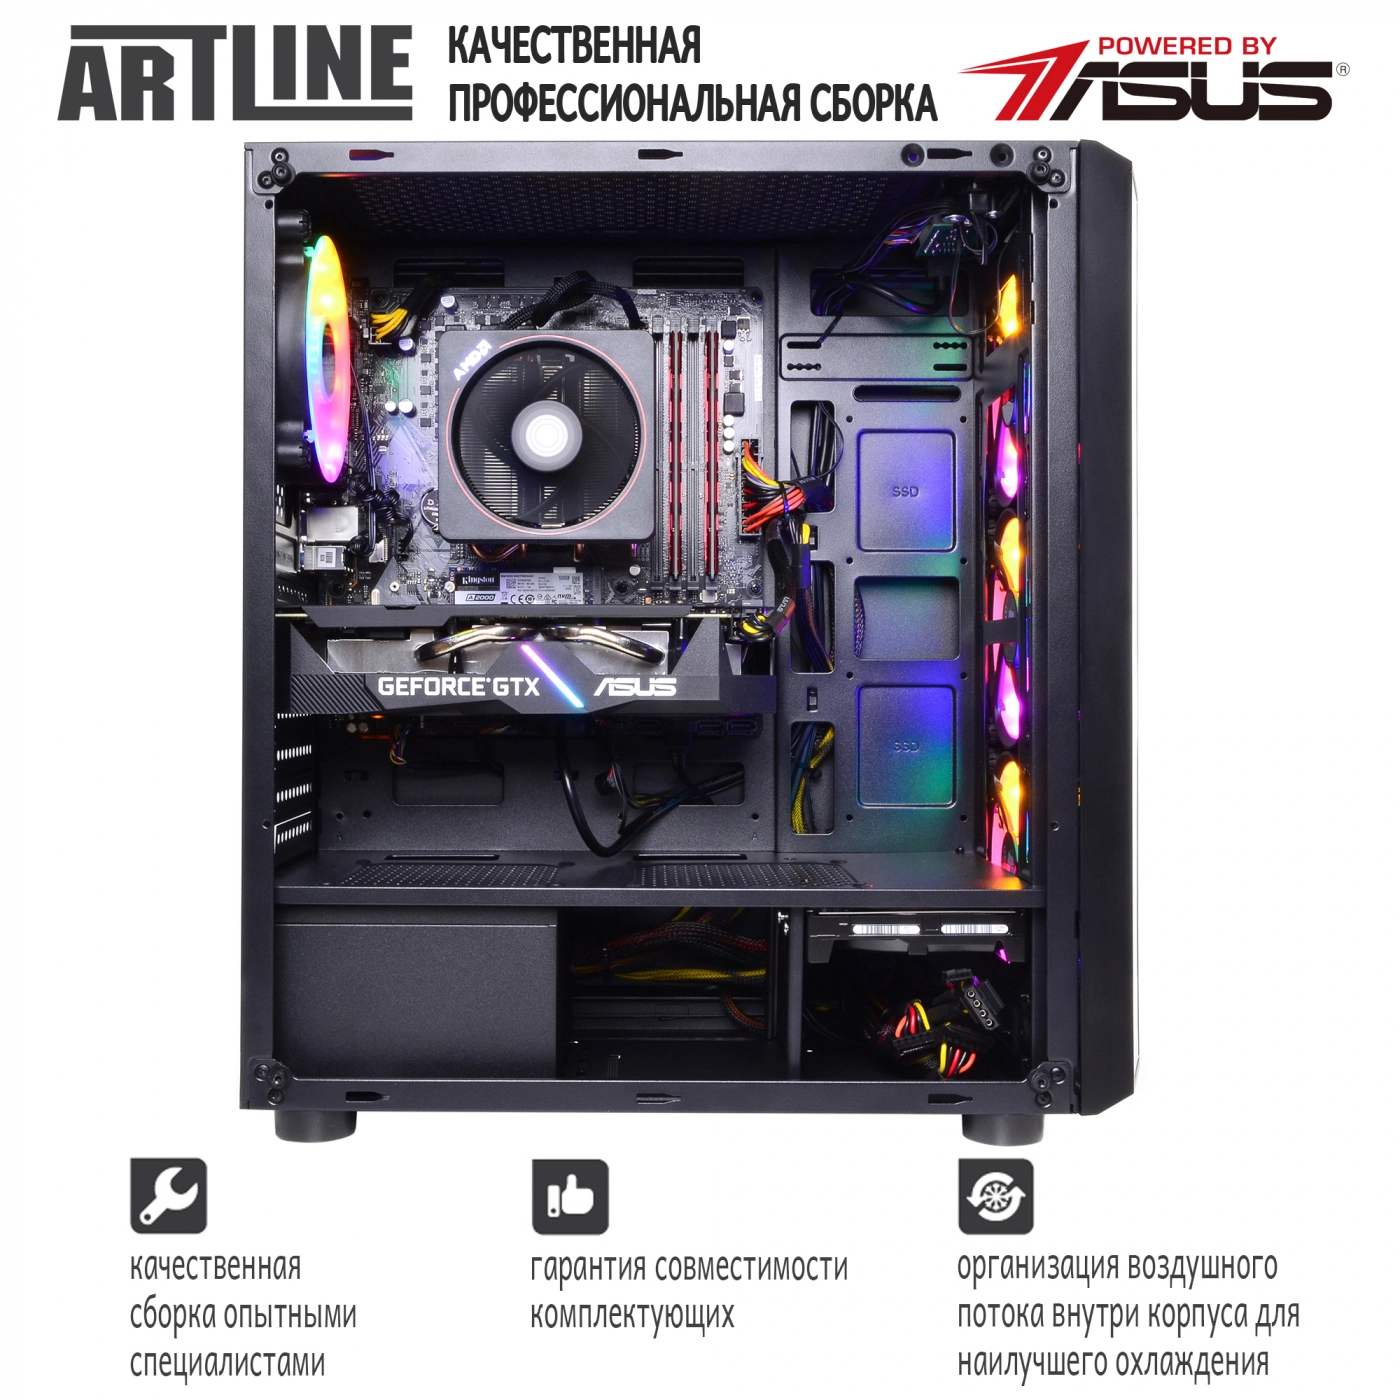 Купить Компьютер ARTLINE Gaming X66v14 - фото 9